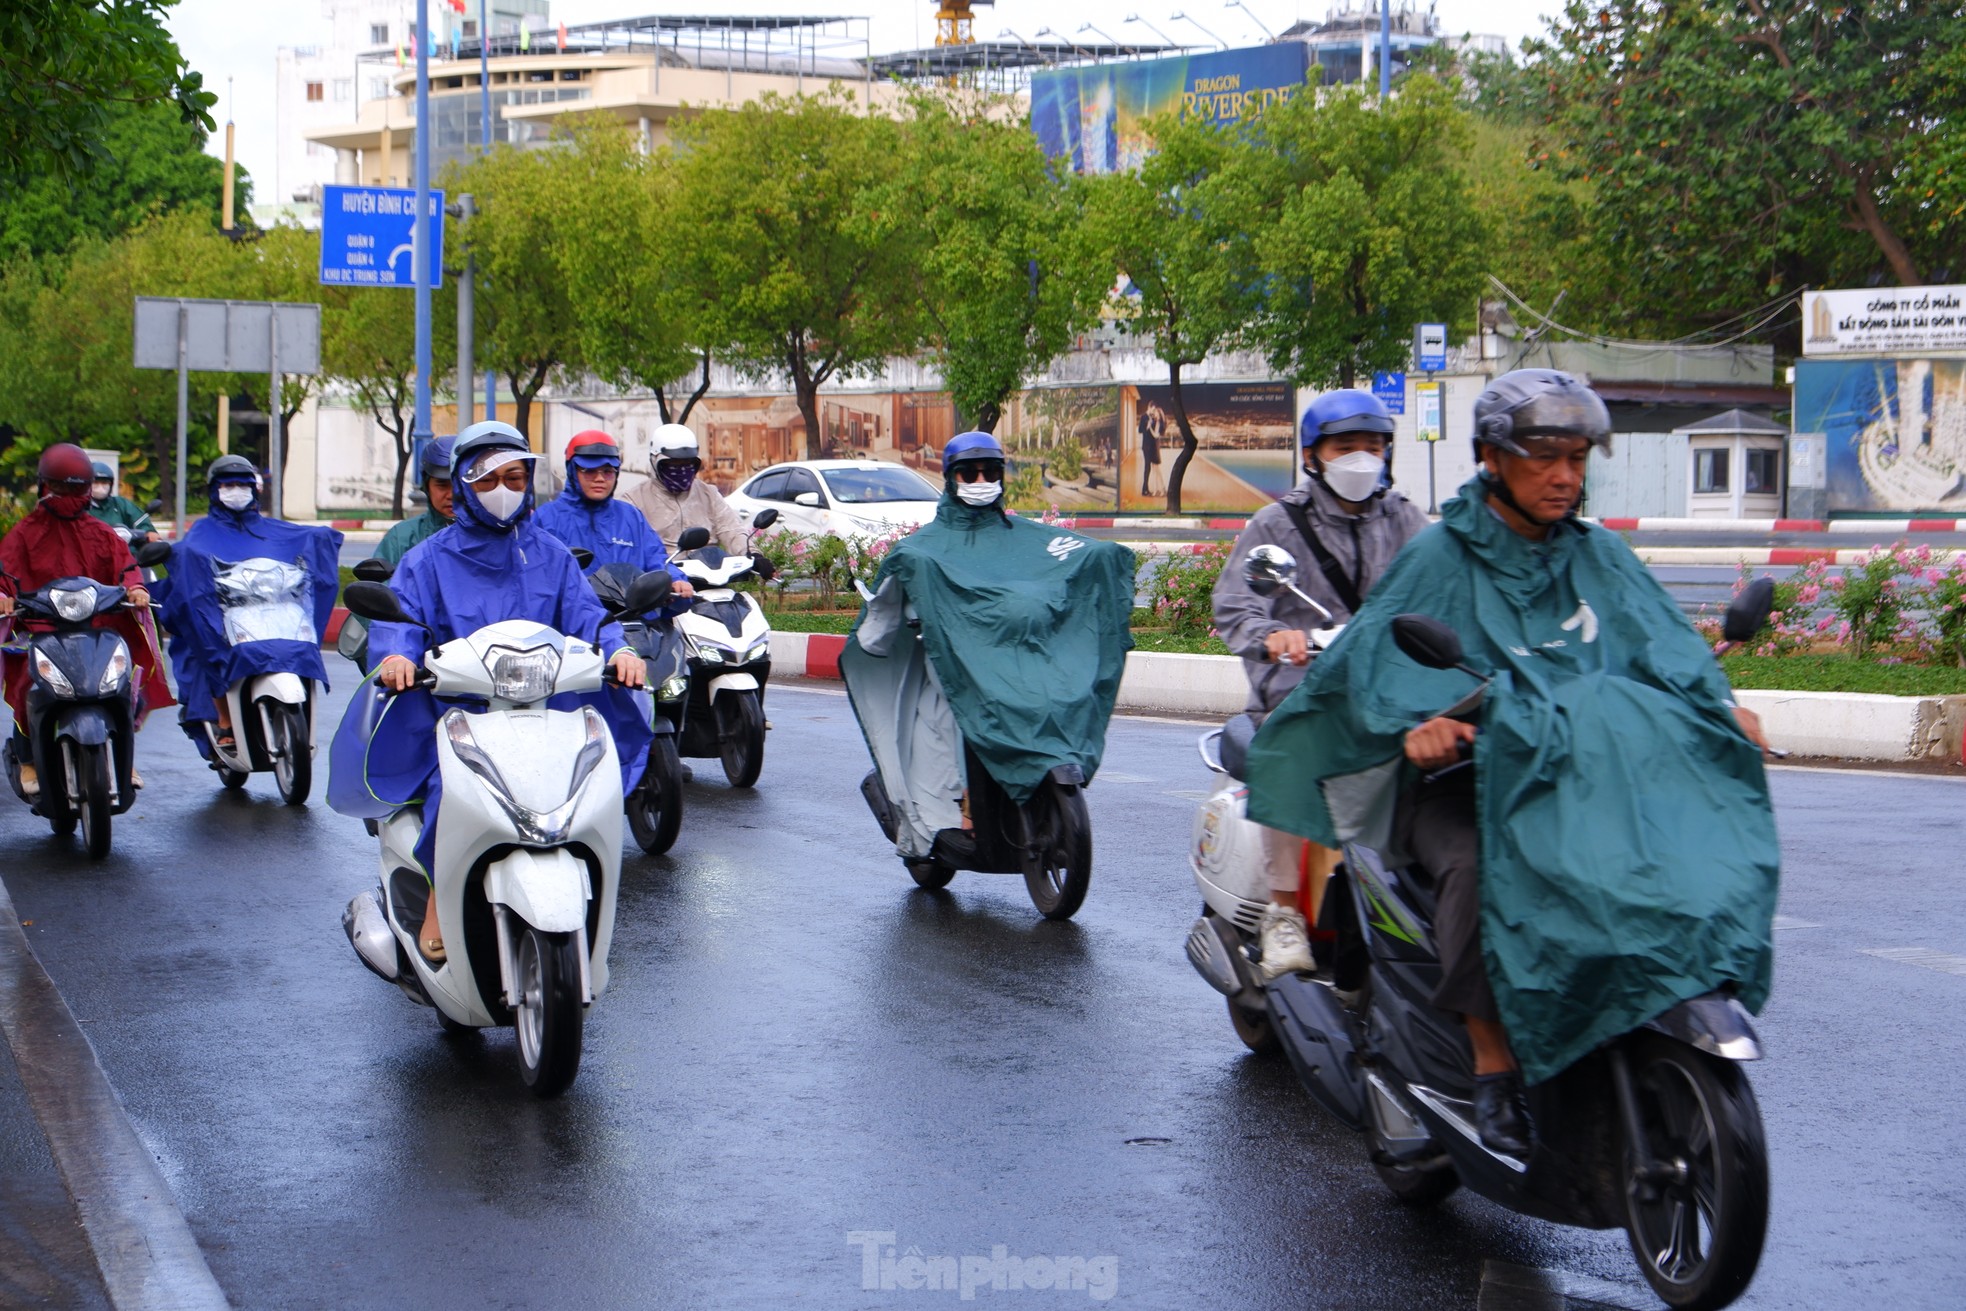 TPHCM bất chợt 'mưa vàng', nhiều người bị té ngã vì đường trơn ảnh 2